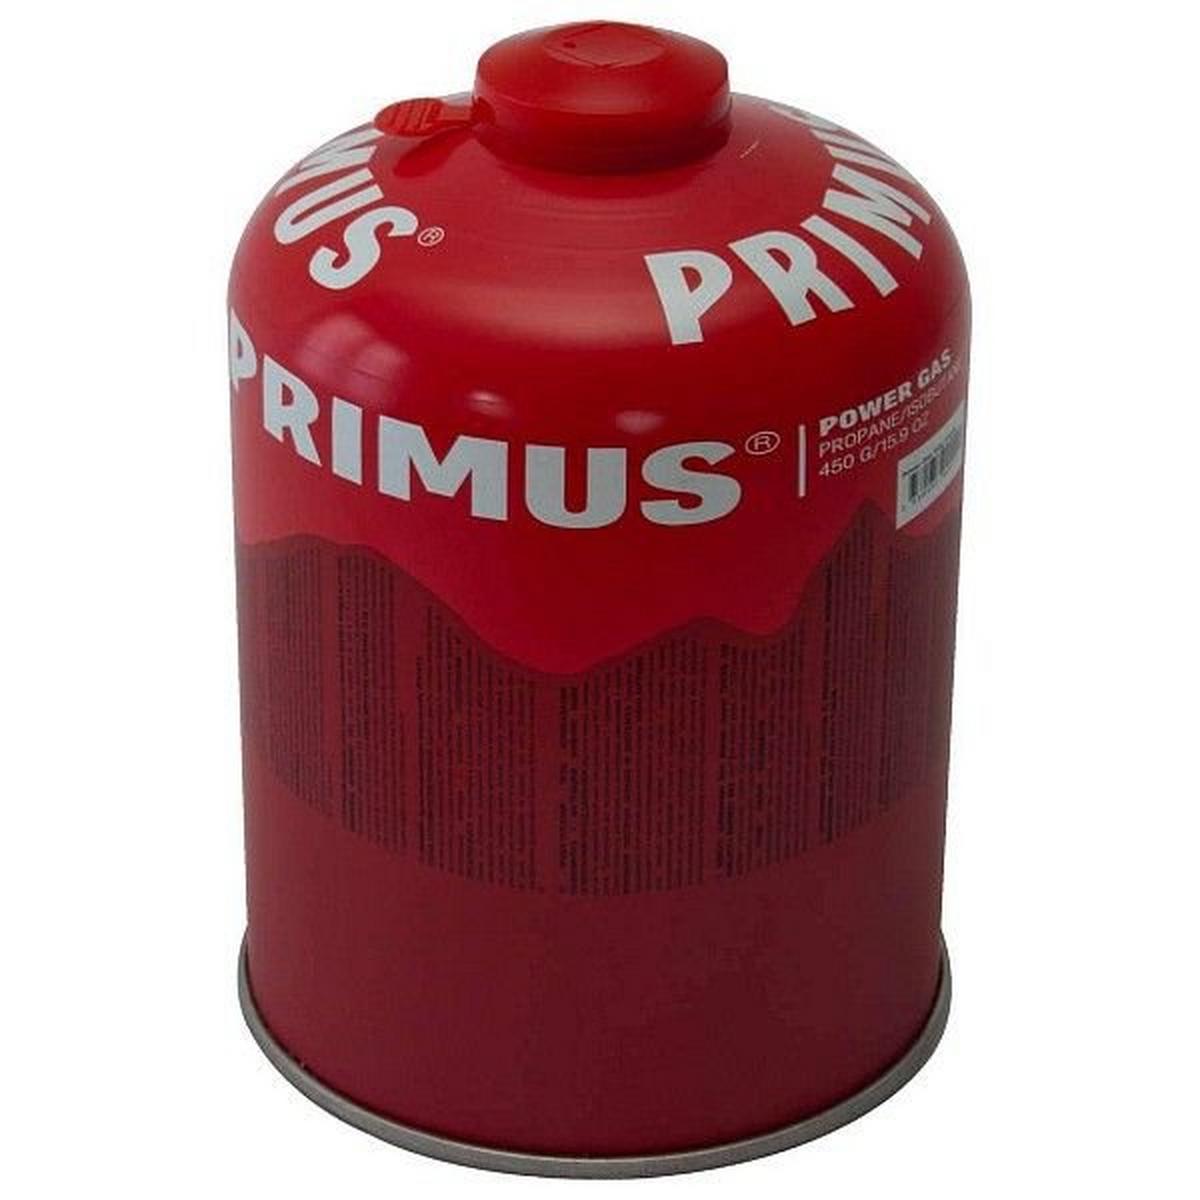 Primus Powergas 450g